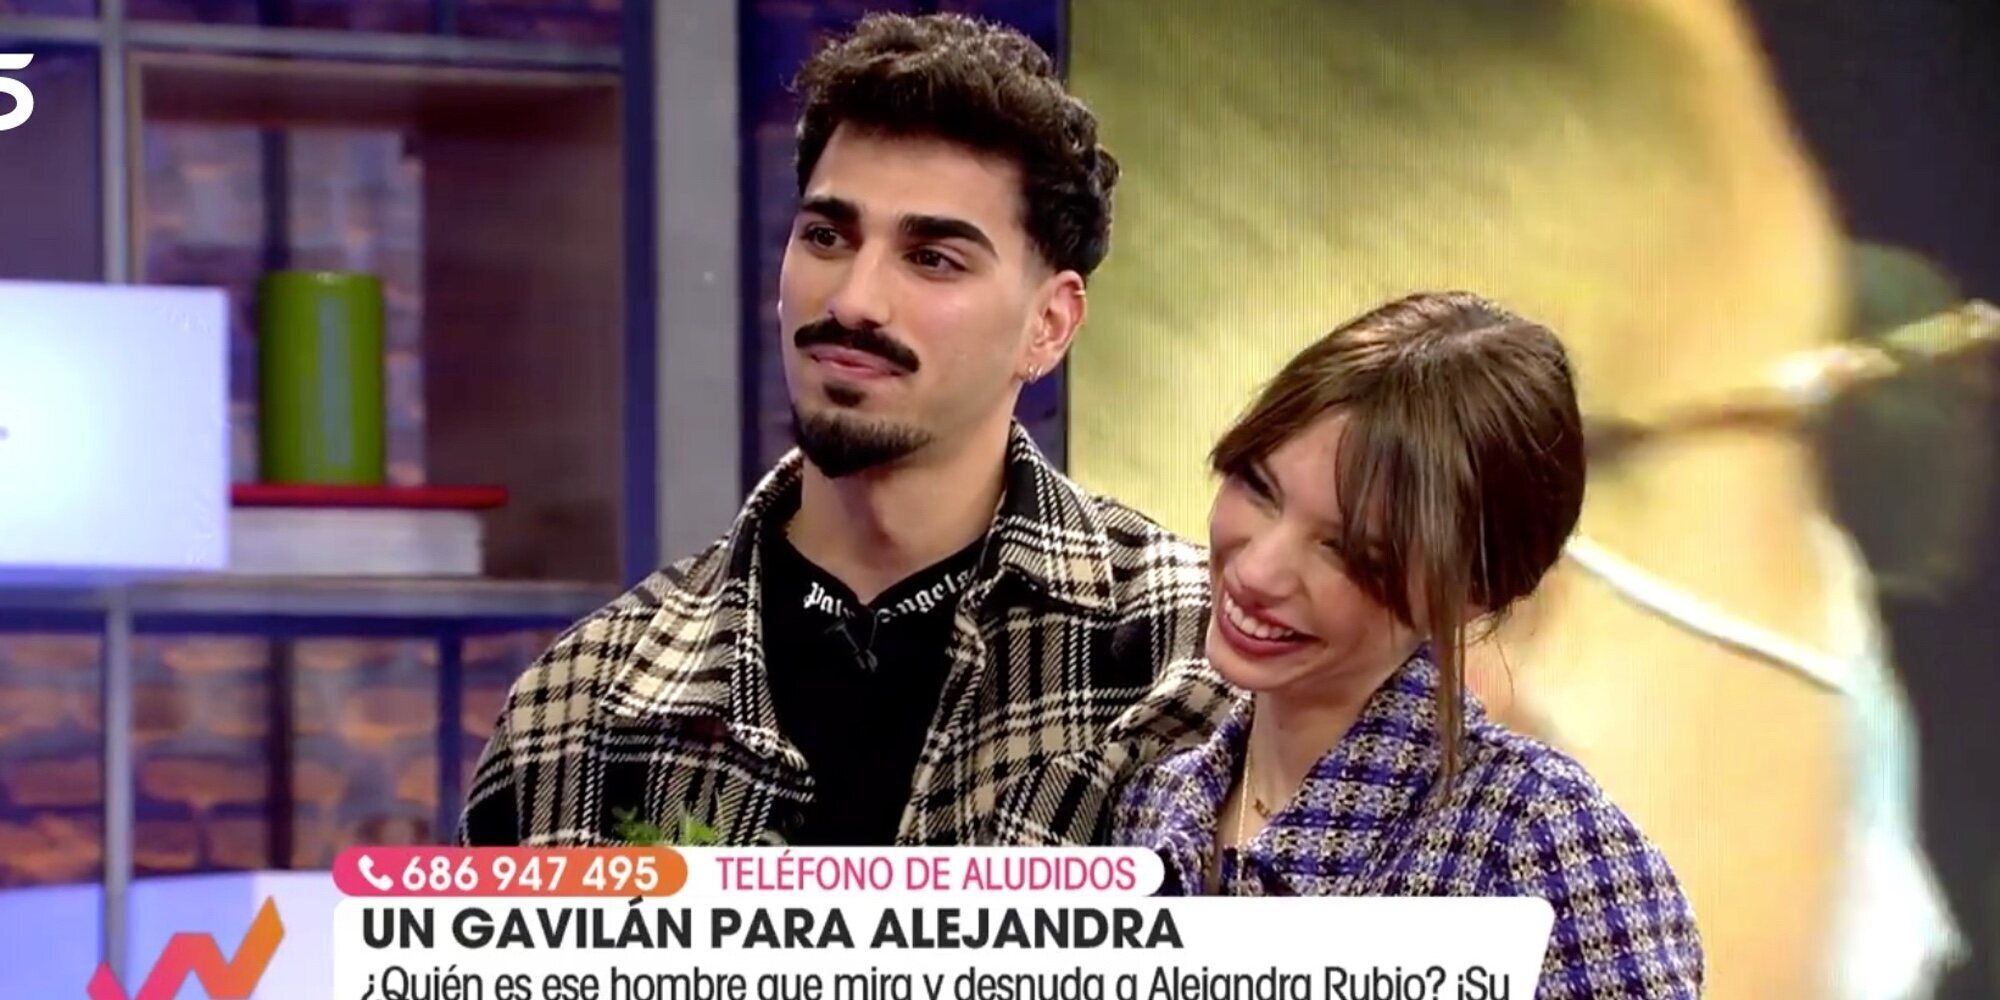 La romántica sorpresa de Carlos Agüera a su novia Alejandra Rubio en 'Viva la vida'